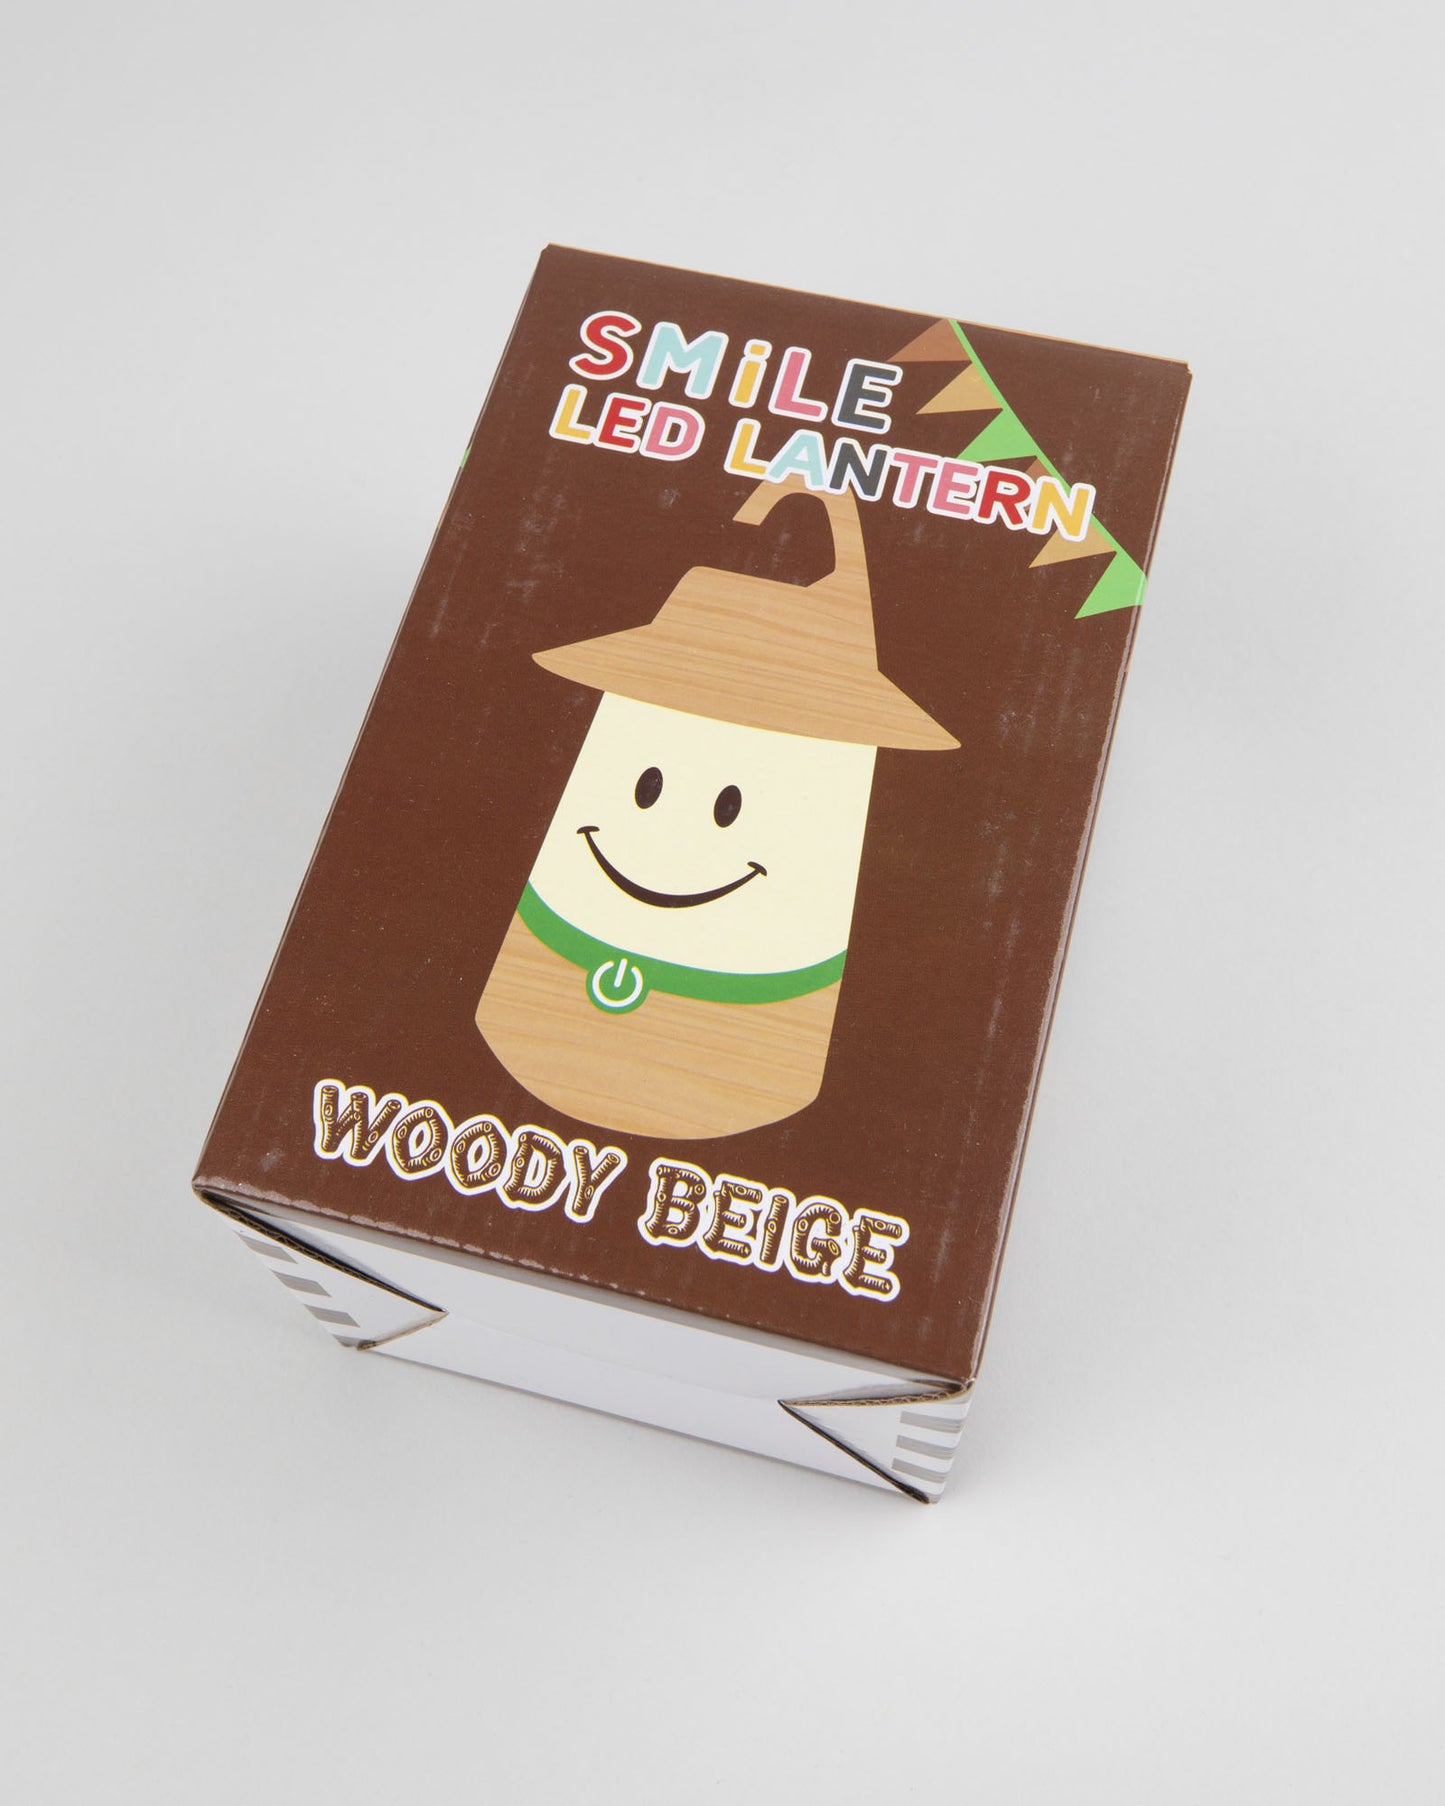 SMILE LED LANTERN - Woody Beige